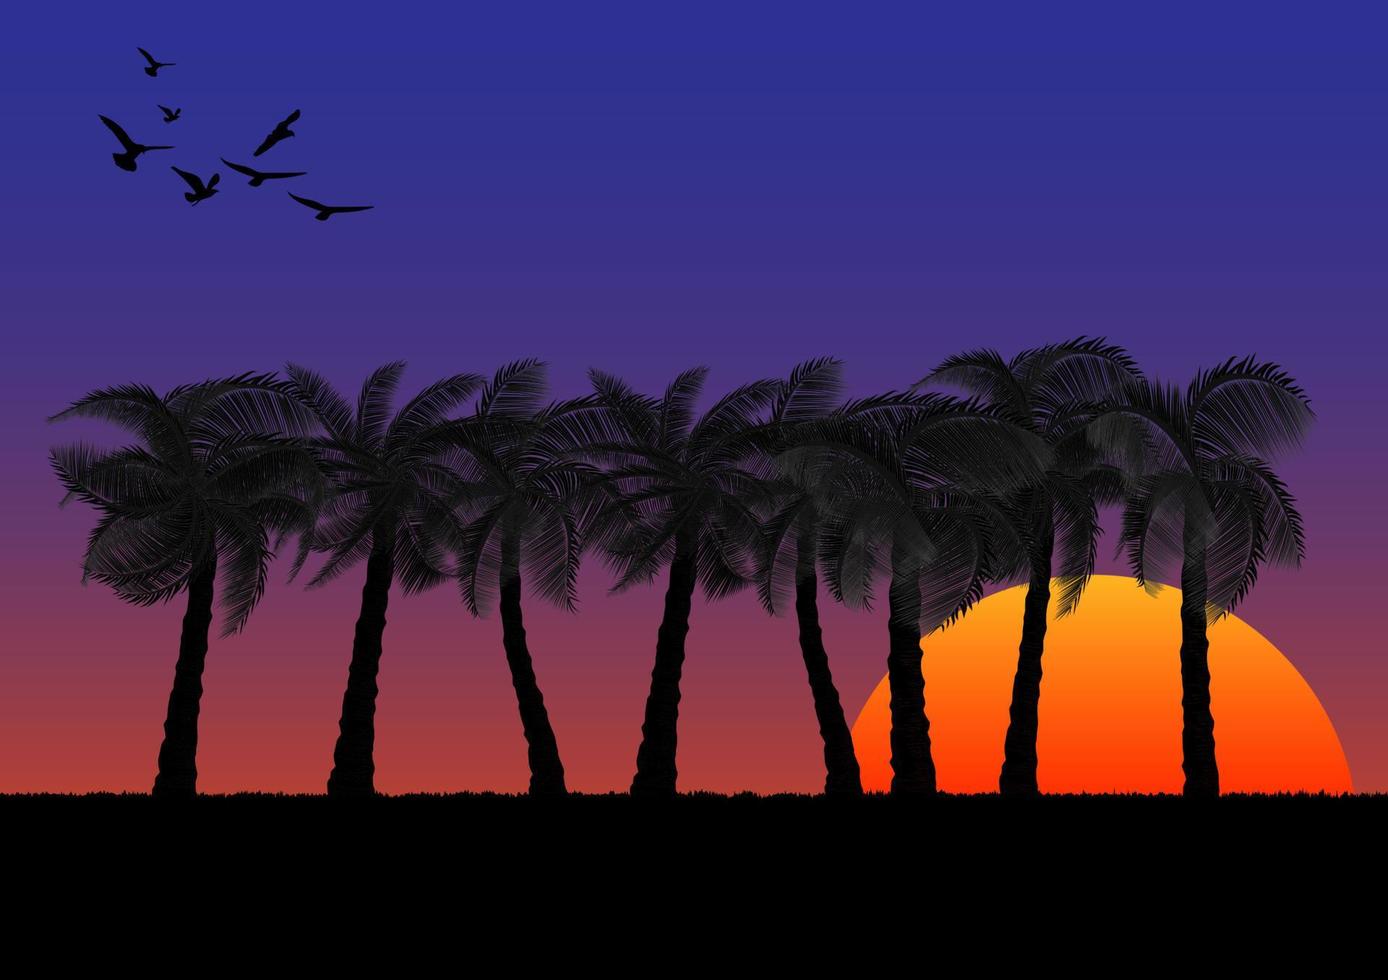 imagen gráfica árbol de coco con fondo de puesta de sol o amanecer naranja y azul del cielo ilustración vectorial vector